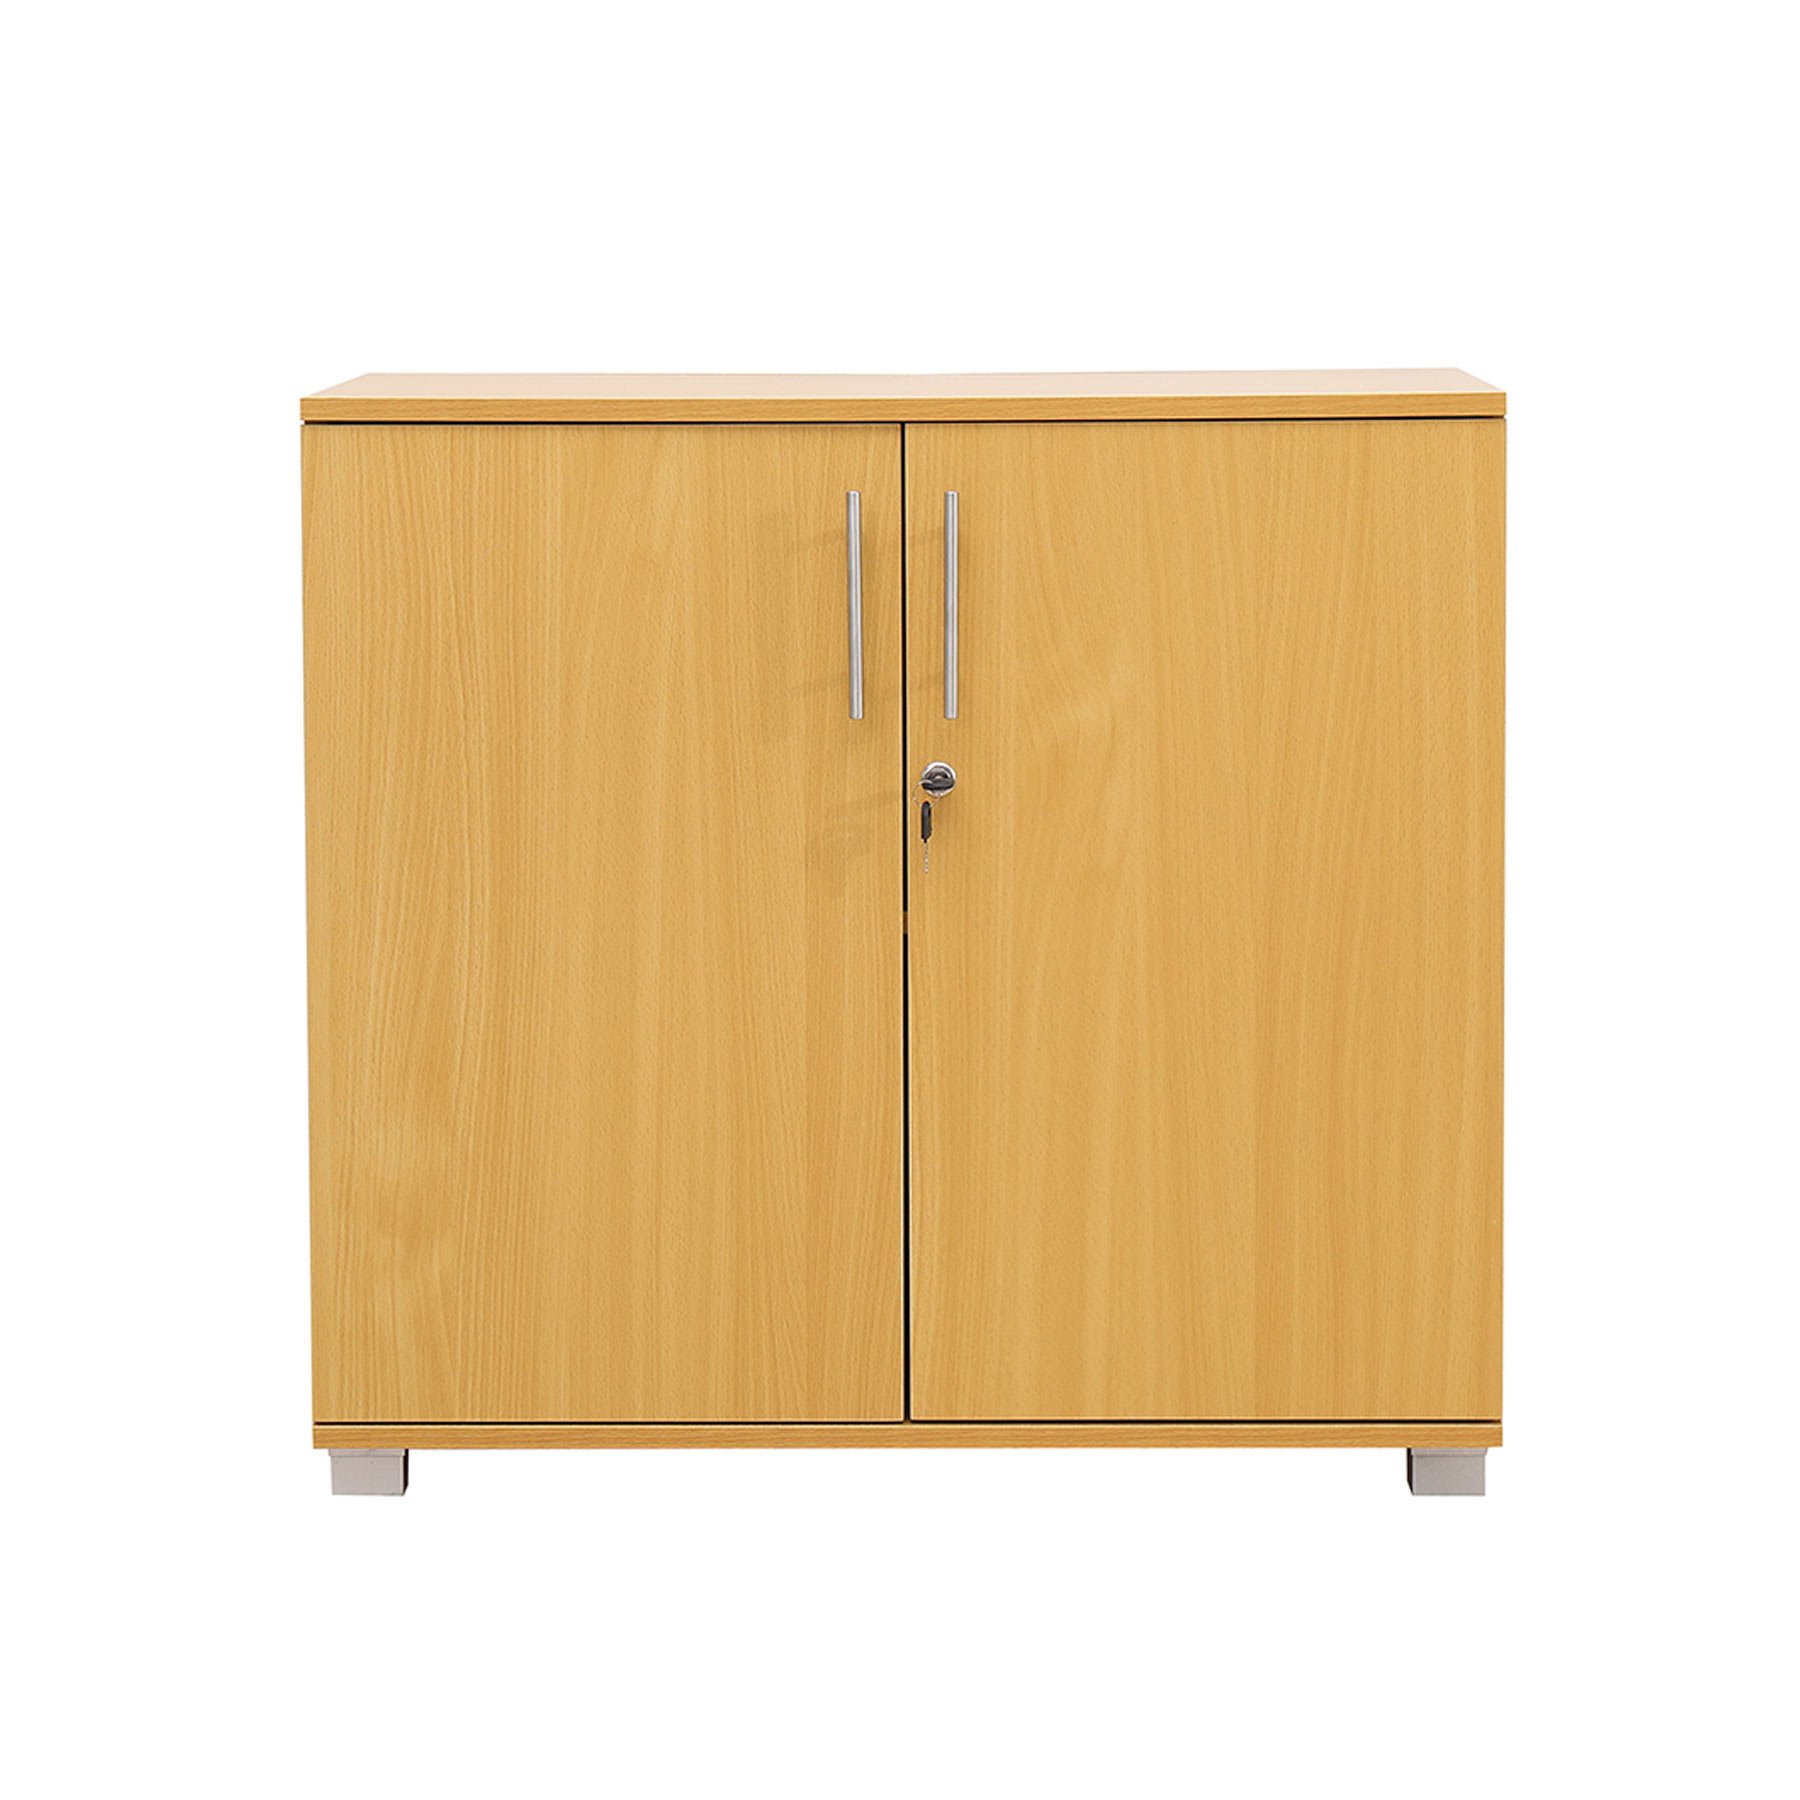 Door Storage Cabinet Locking Doors 730mm, Wooden Storage Cabinet With Locking Doors